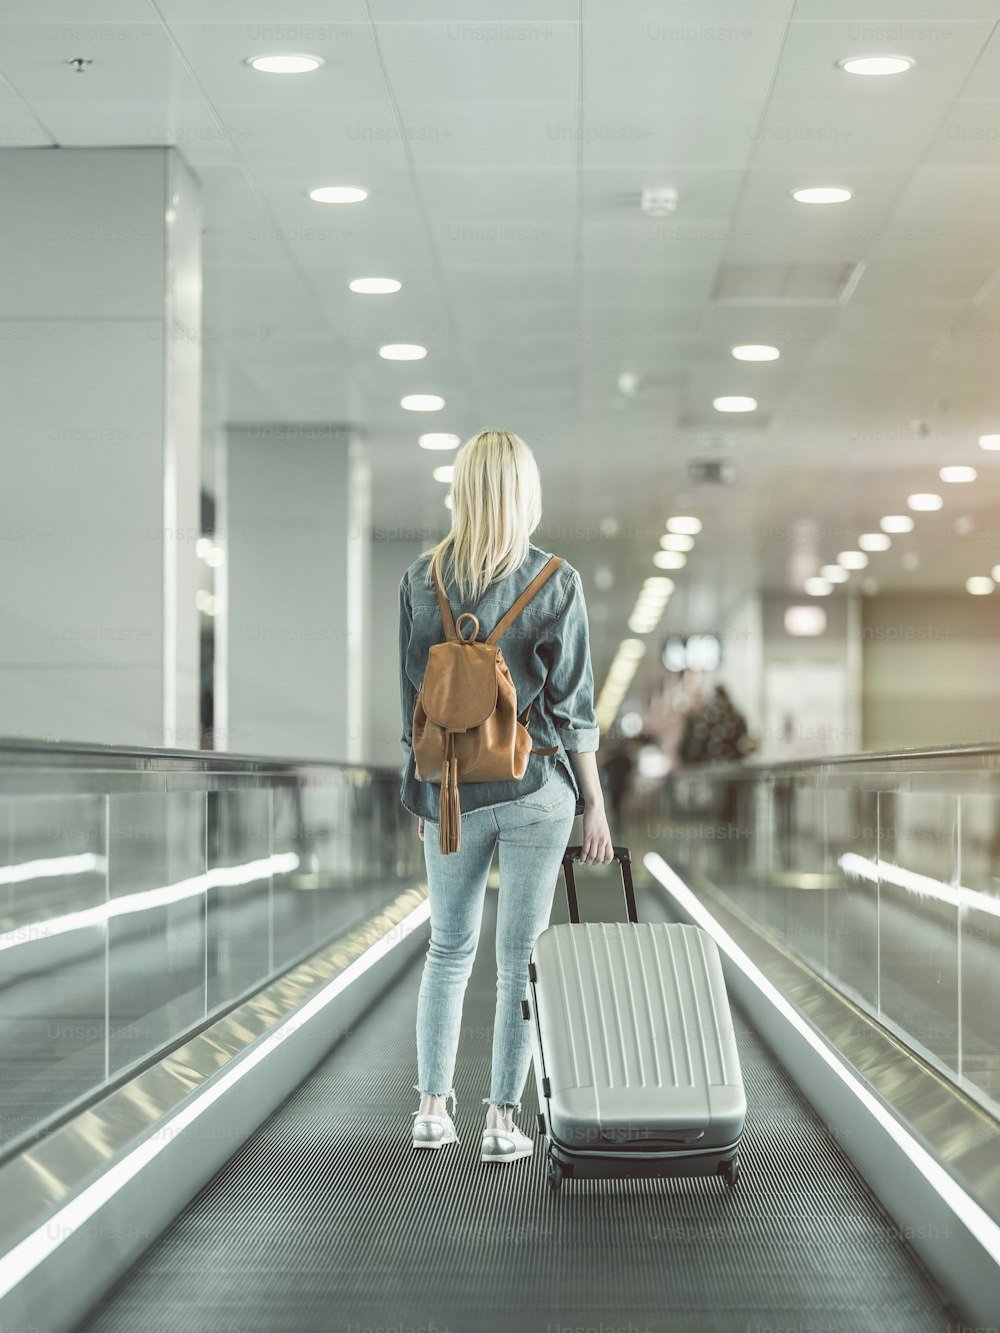 Fêmea de comprimento total mantendo mala grande na escada rolante no aeroporto. Conceito de turista durante a viagem